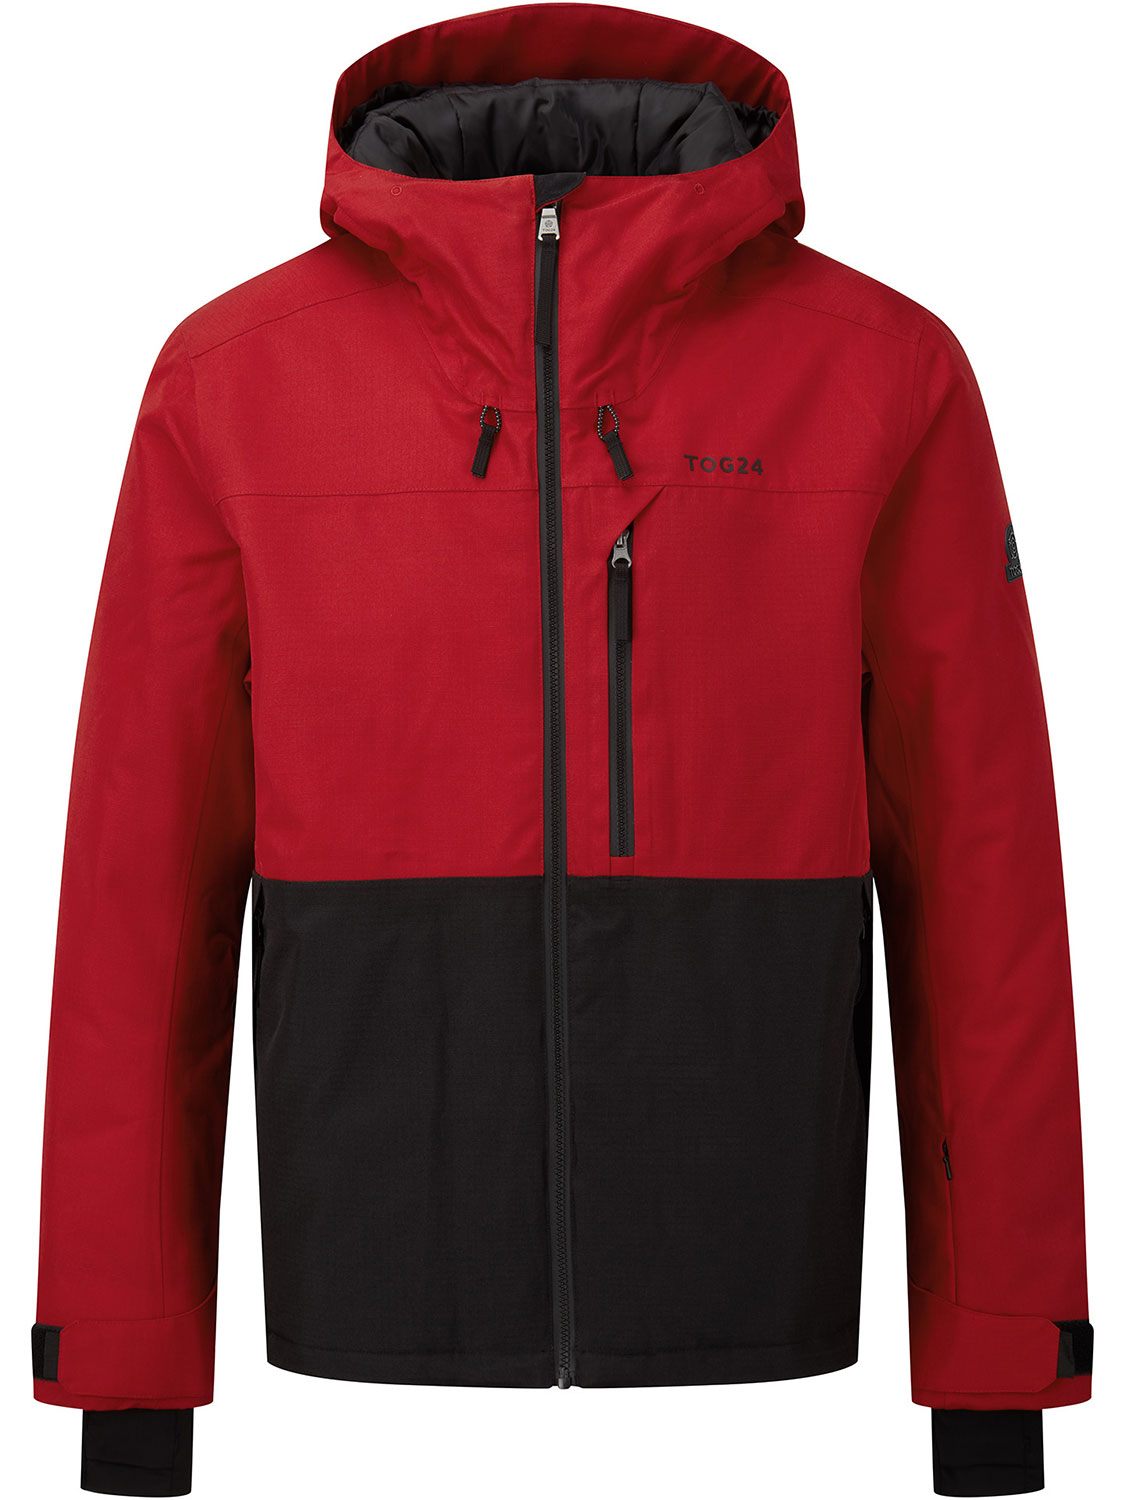 Hail Ski Jacket - Size: XL Men’s Red Tog24